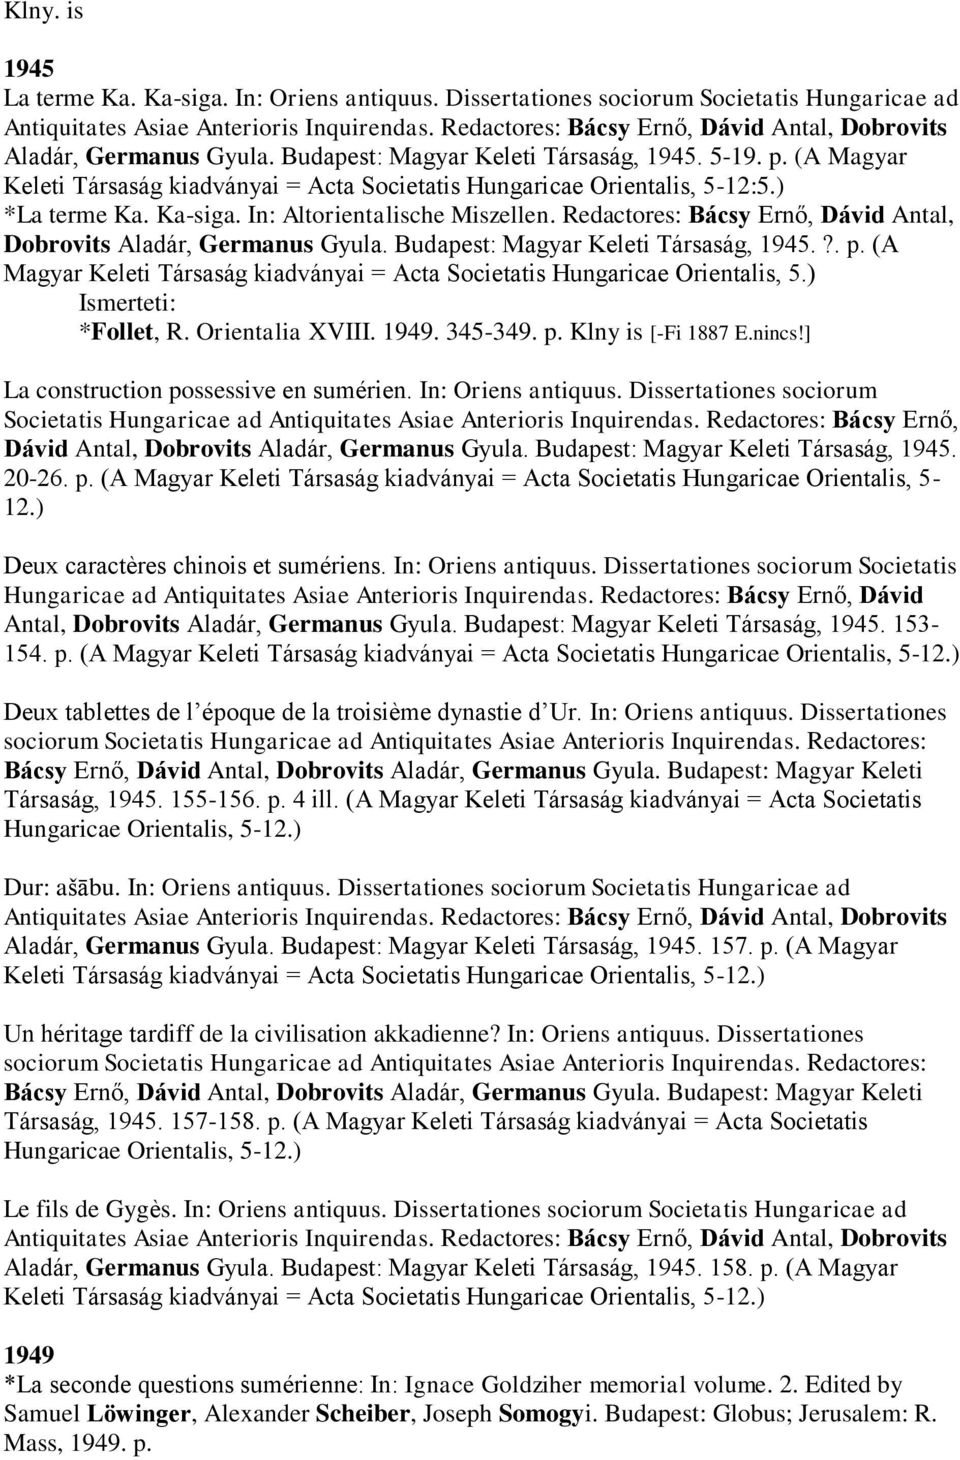 (A Magyar Keleti Társaság kiadványai = Acta Societatis Hungaricae Orientalis, 5-12:5.) *La terme Ka. Ka-siga. In: Altorientalische Miszellen.